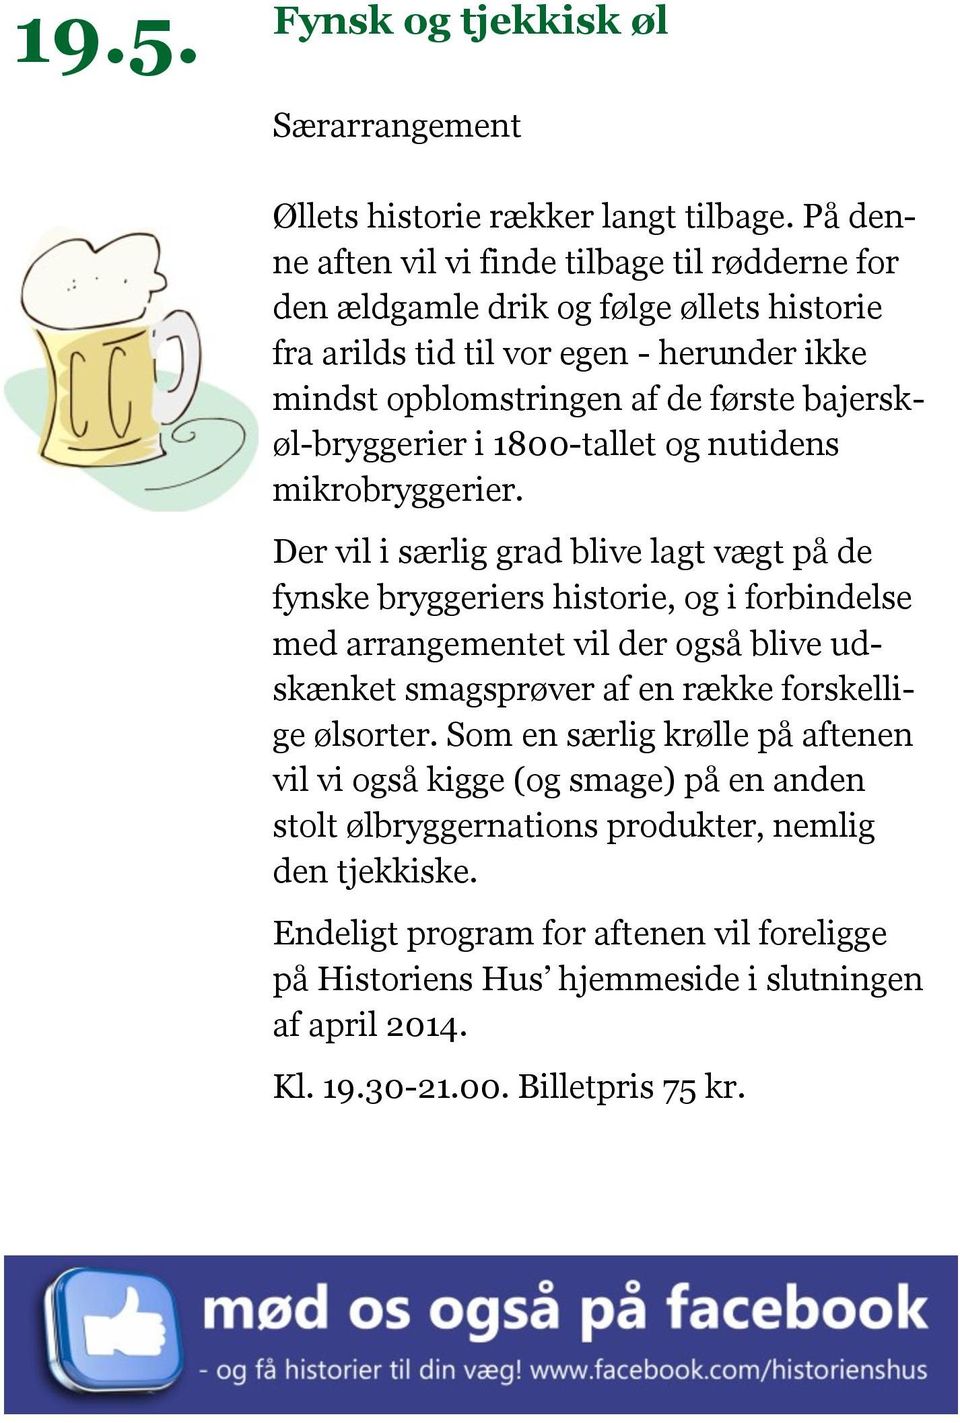 bajerskøl-bryggerier i 1800-tallet og nutidens mikrobryggerier.